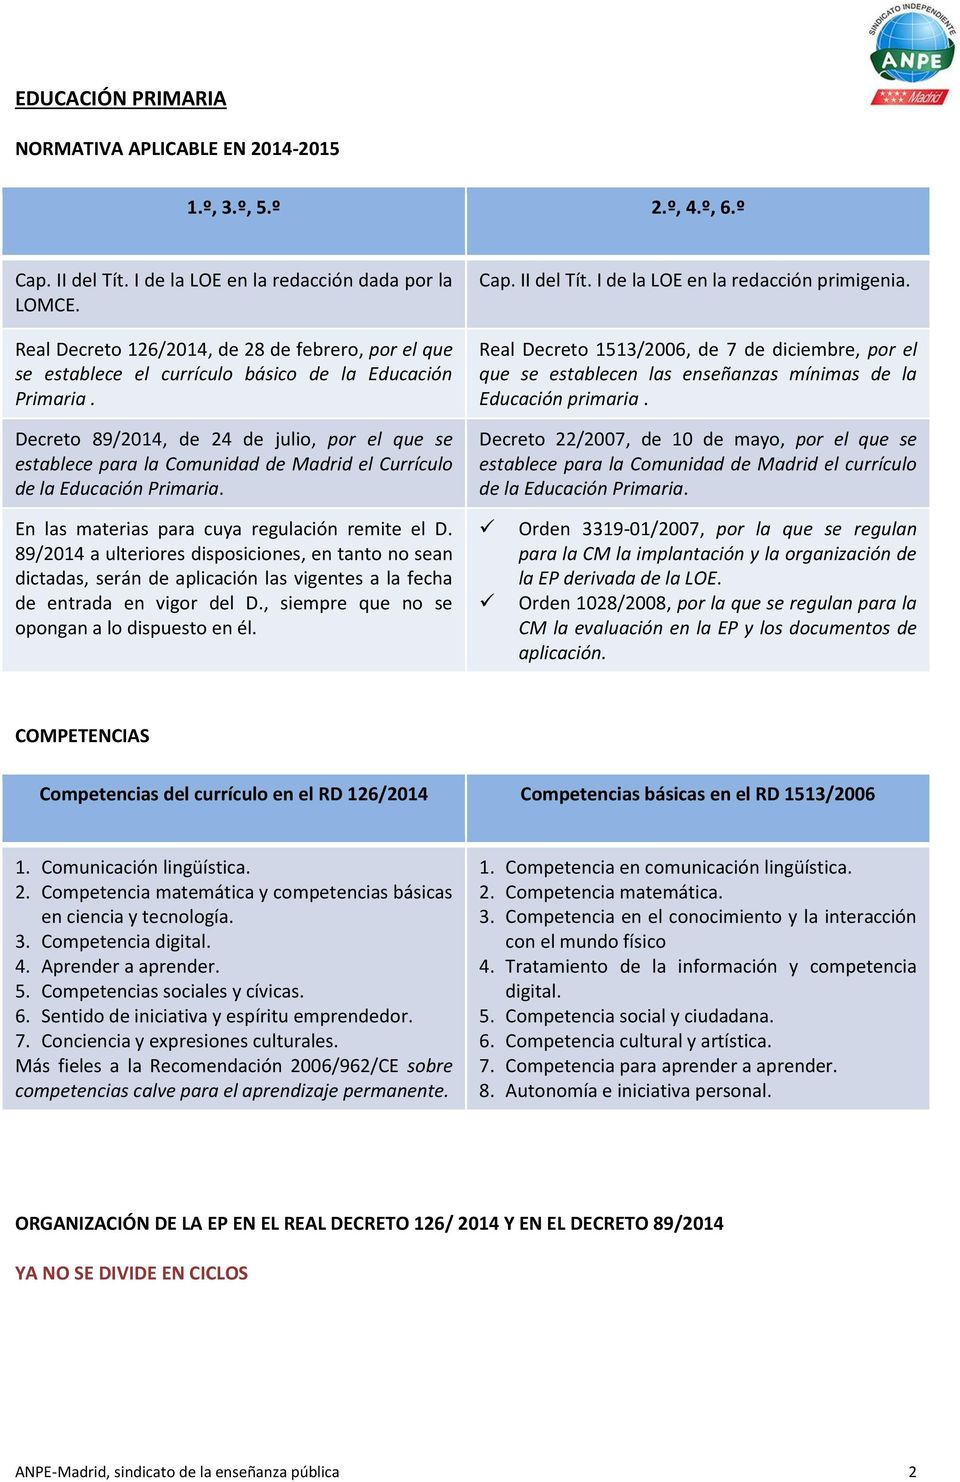 Decreto 89/2014, de 24 de julio, por el que se establece para la Comunidad de Madrid el Currículo de la Educación Primaria. Cap. II del Tít. I de la LOE en la redacción primigenia.